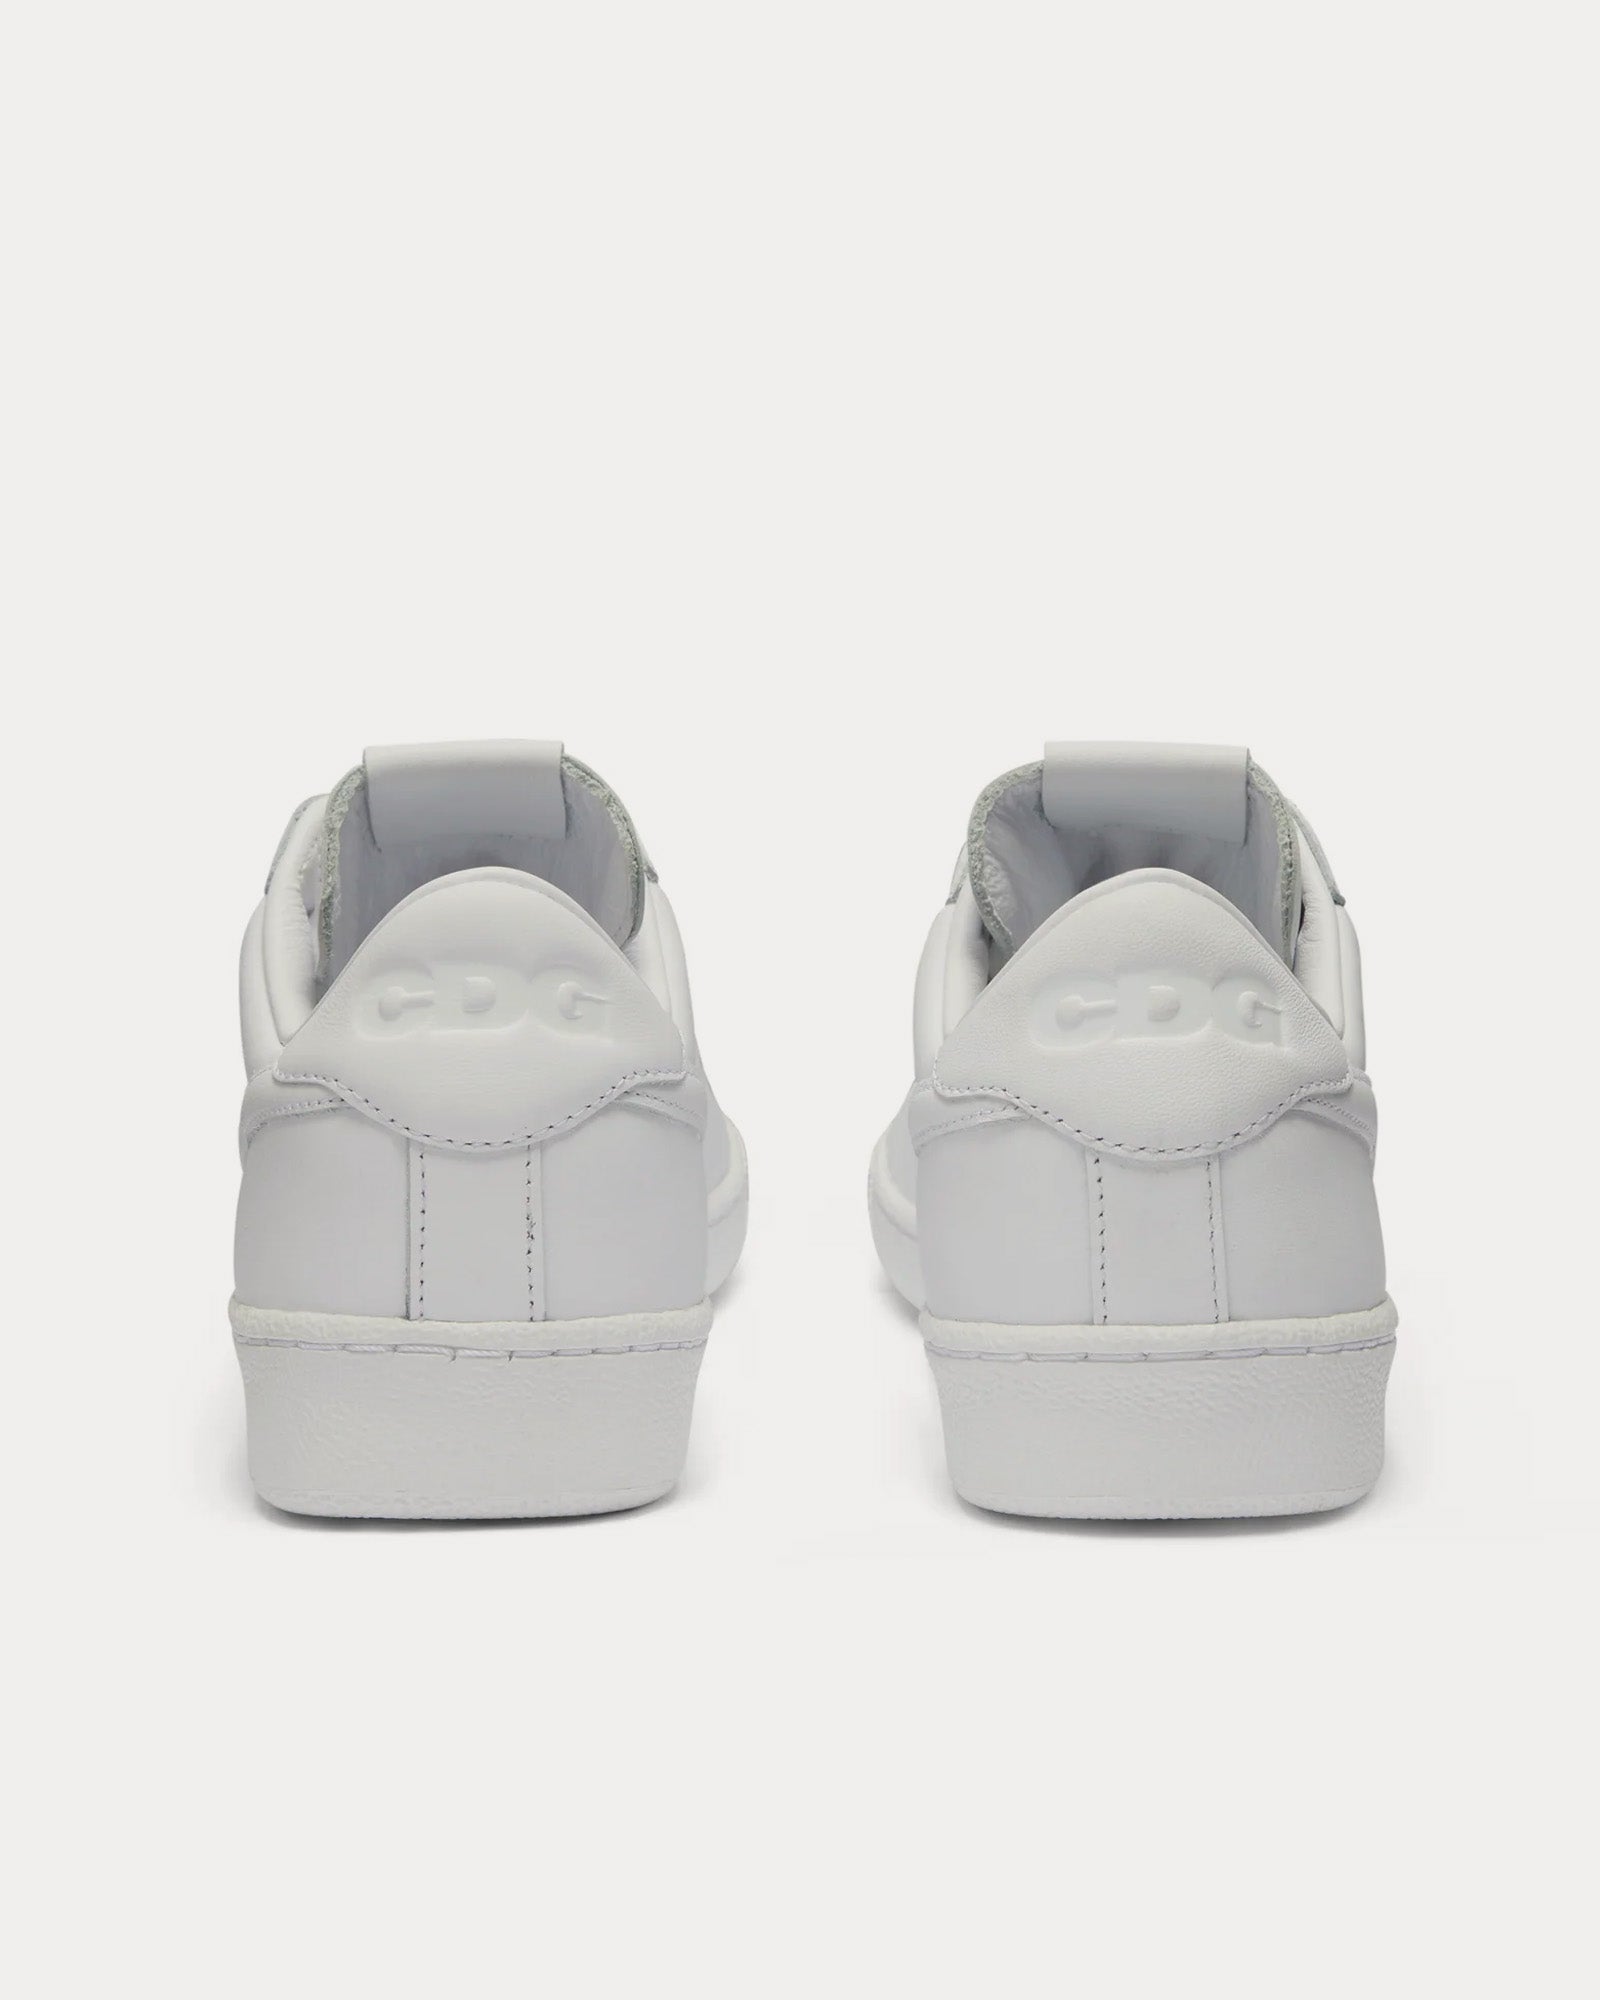 Nike x Comme des Garçons - Tennis Classic SP White Low Top Sneakers